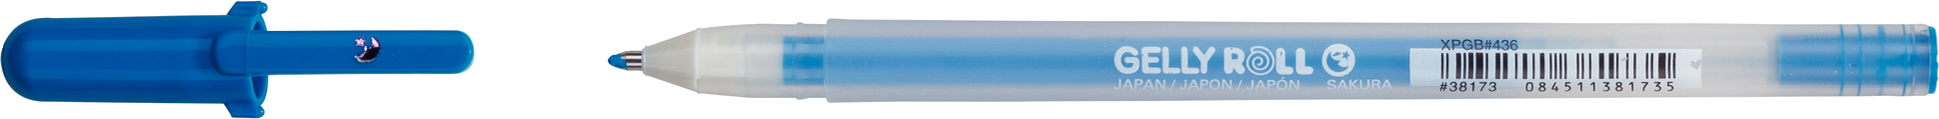 SAKURA Gelly Roll 0.5mm XPGB436 Moonlight blau